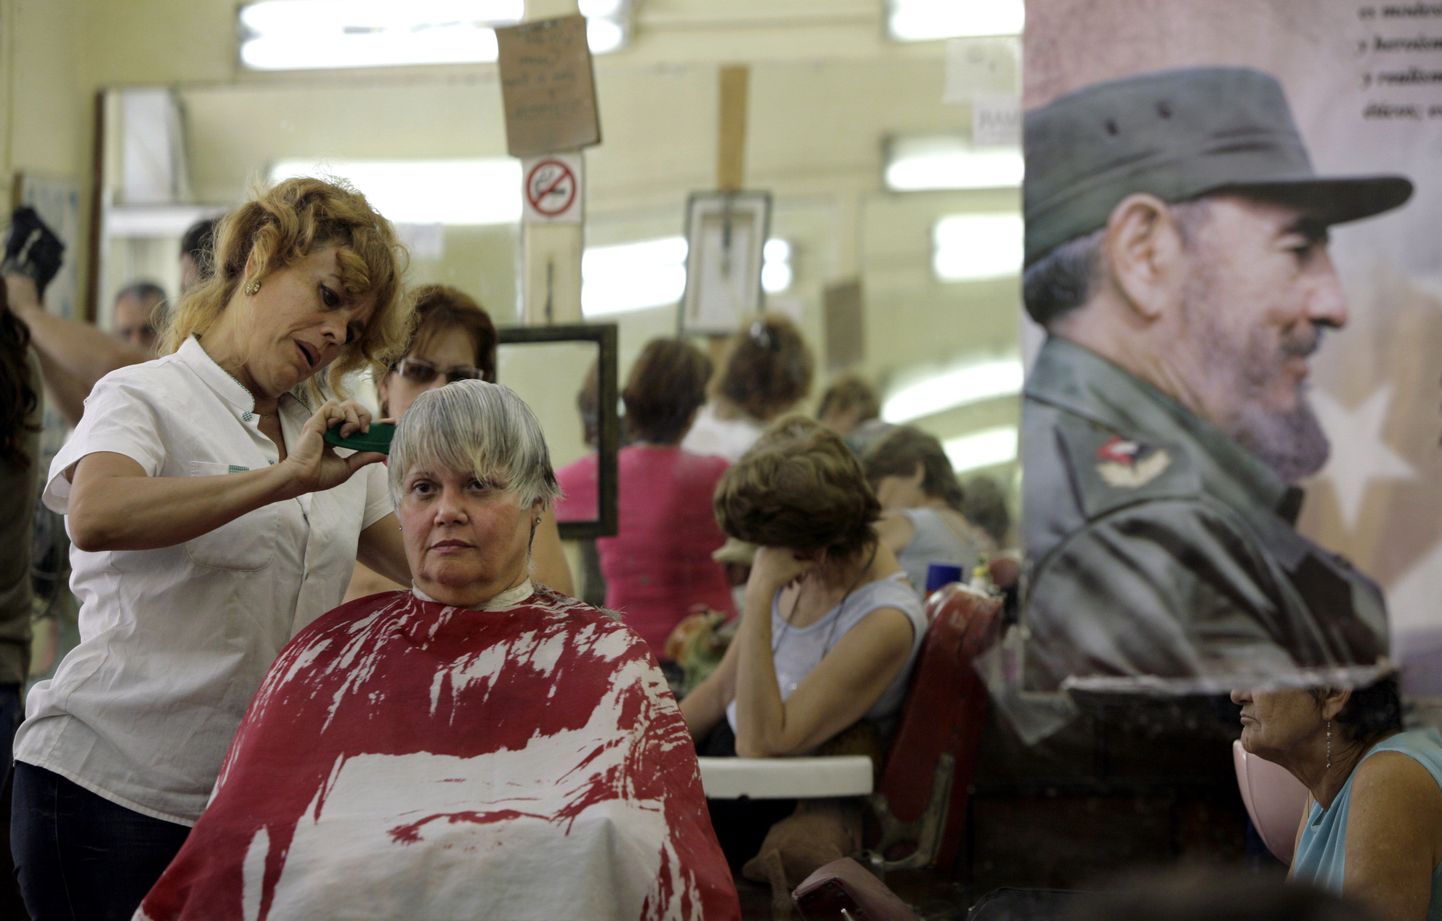 Kuuba juuksurisalongis ripub ekspresidenti Fidel Castrot kujutav plakat.